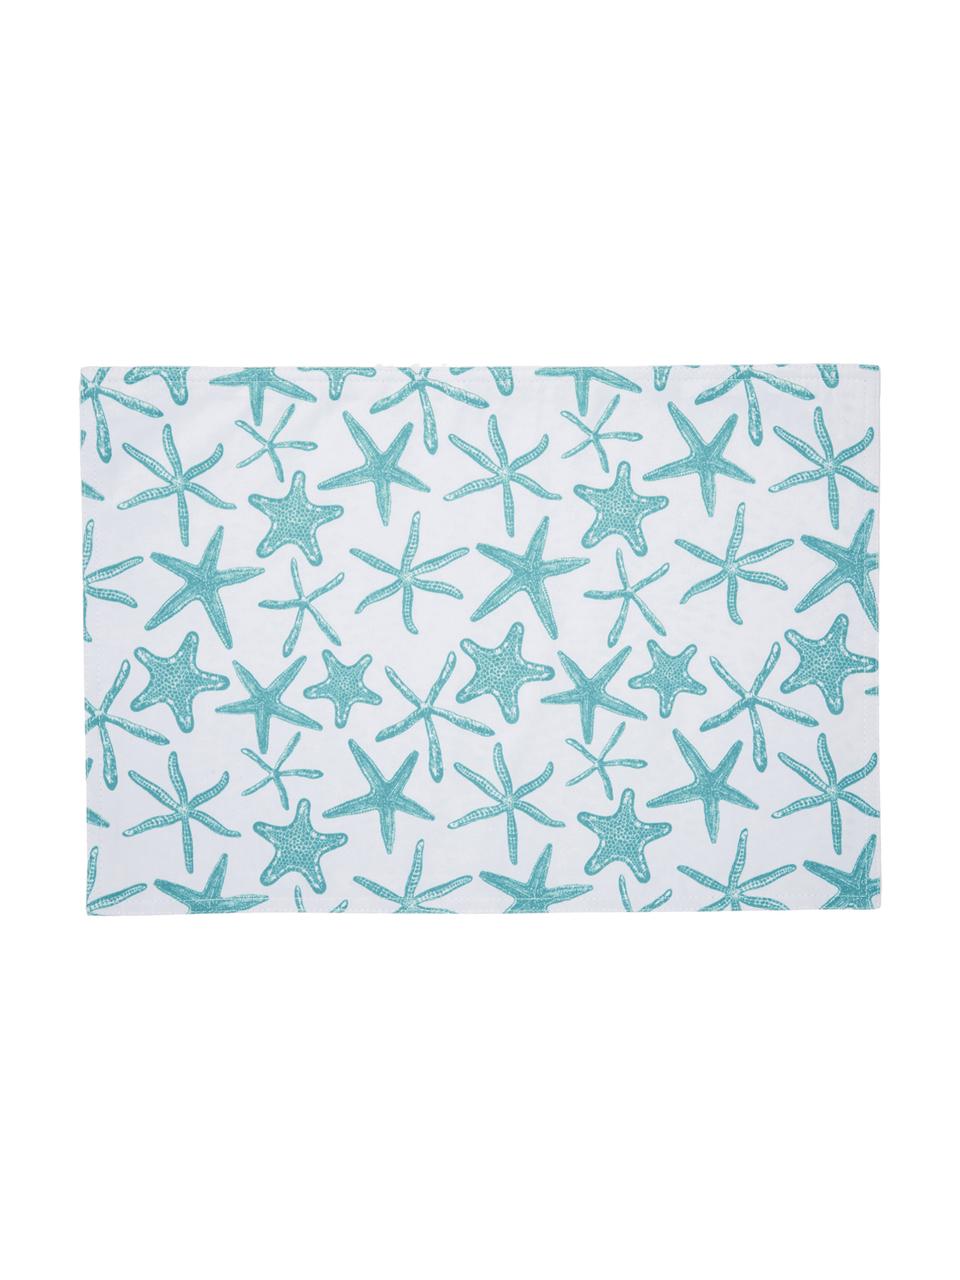 Wasserabweisende Kunststoff-Tischsets Starbone, 2 Stück, Polyester, Weiß, Blau, 33 x 48 cm